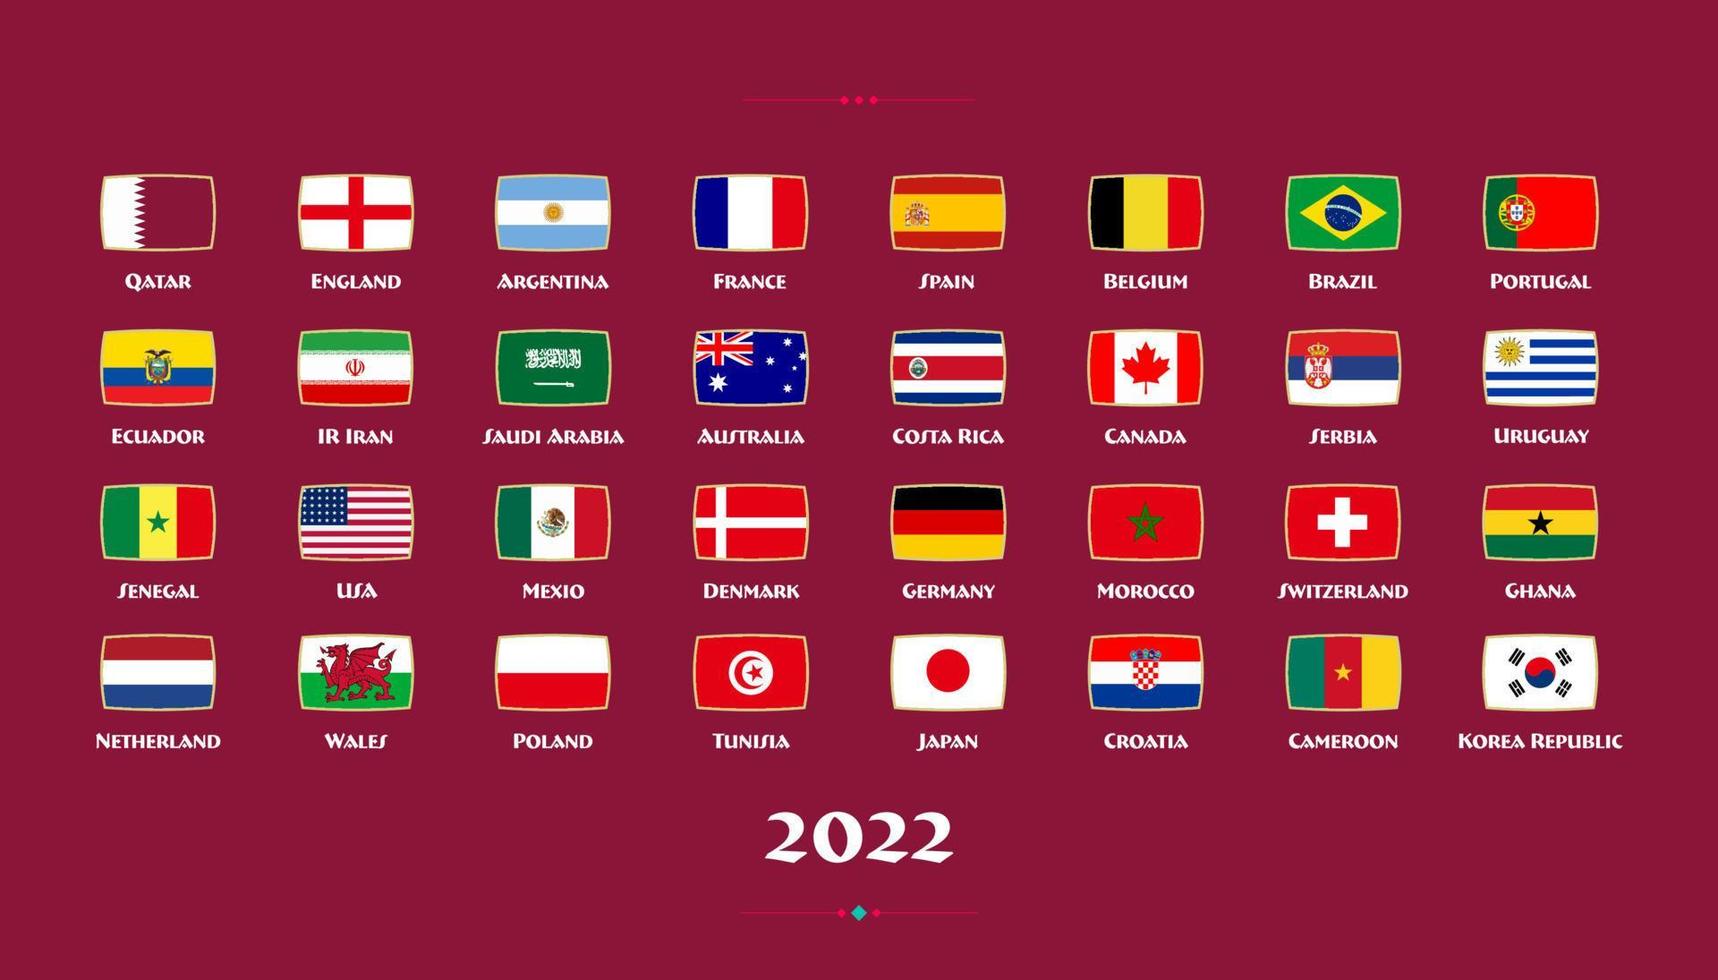 alle Flaggen der Länder in der Fußballmeisterschaft 2022. Vektor